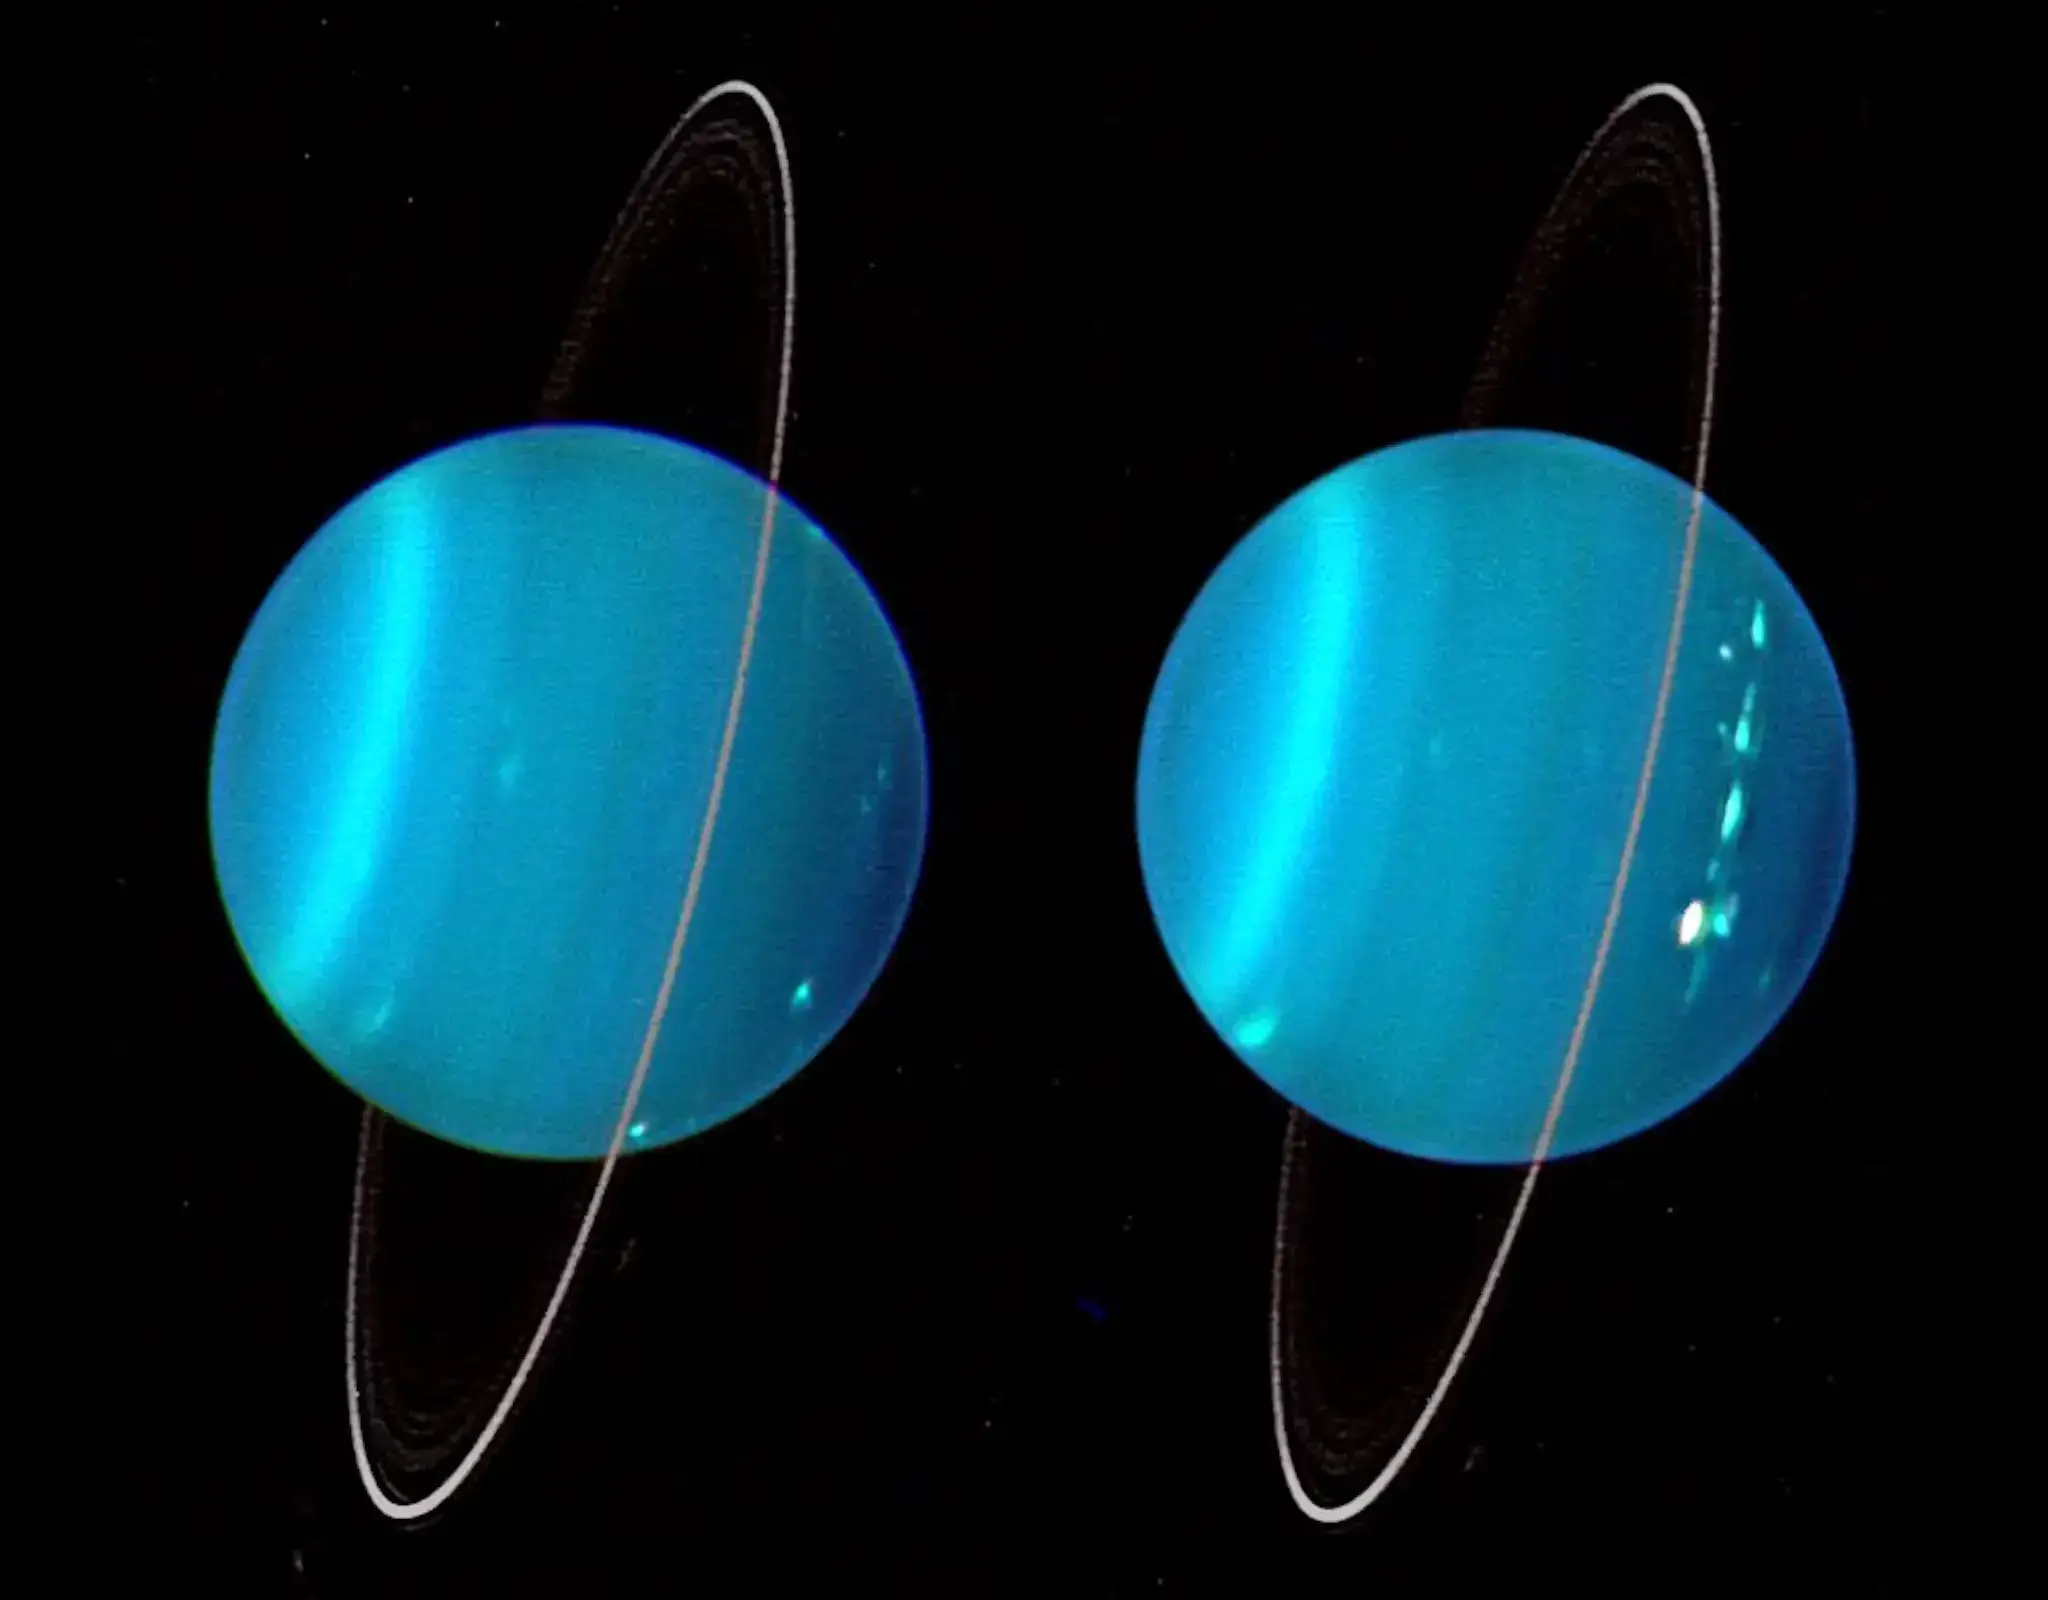 The faint rings of Uranus